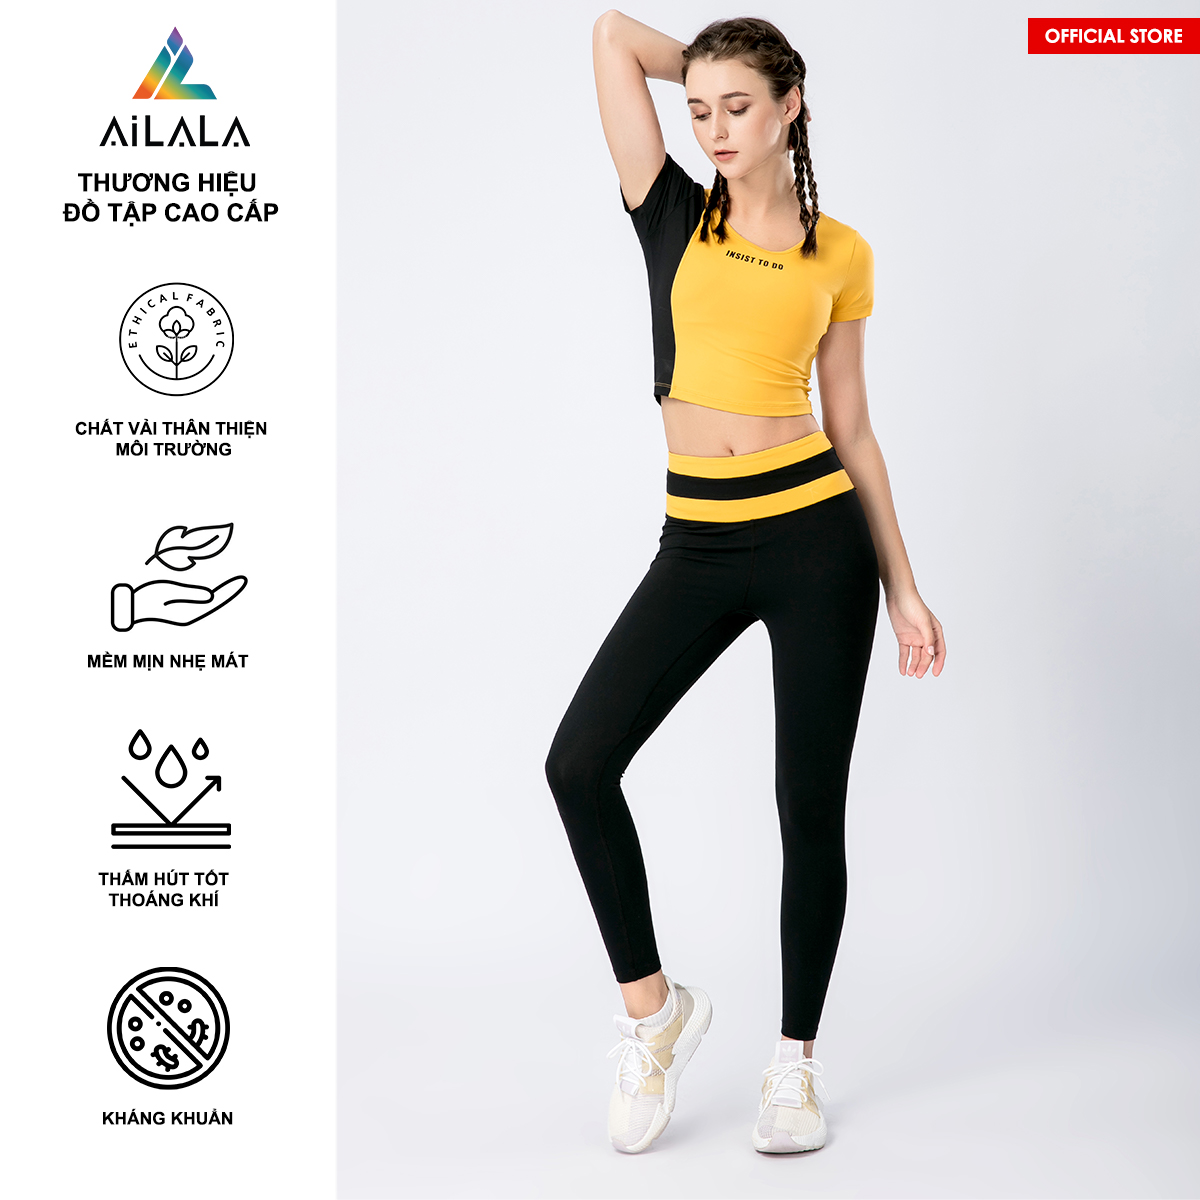 Bộ quần áo thể thao nữ AiLALA LUX45, Đồ tập Yoga Gym Pilates, chất vải Hi-tech cao cấp